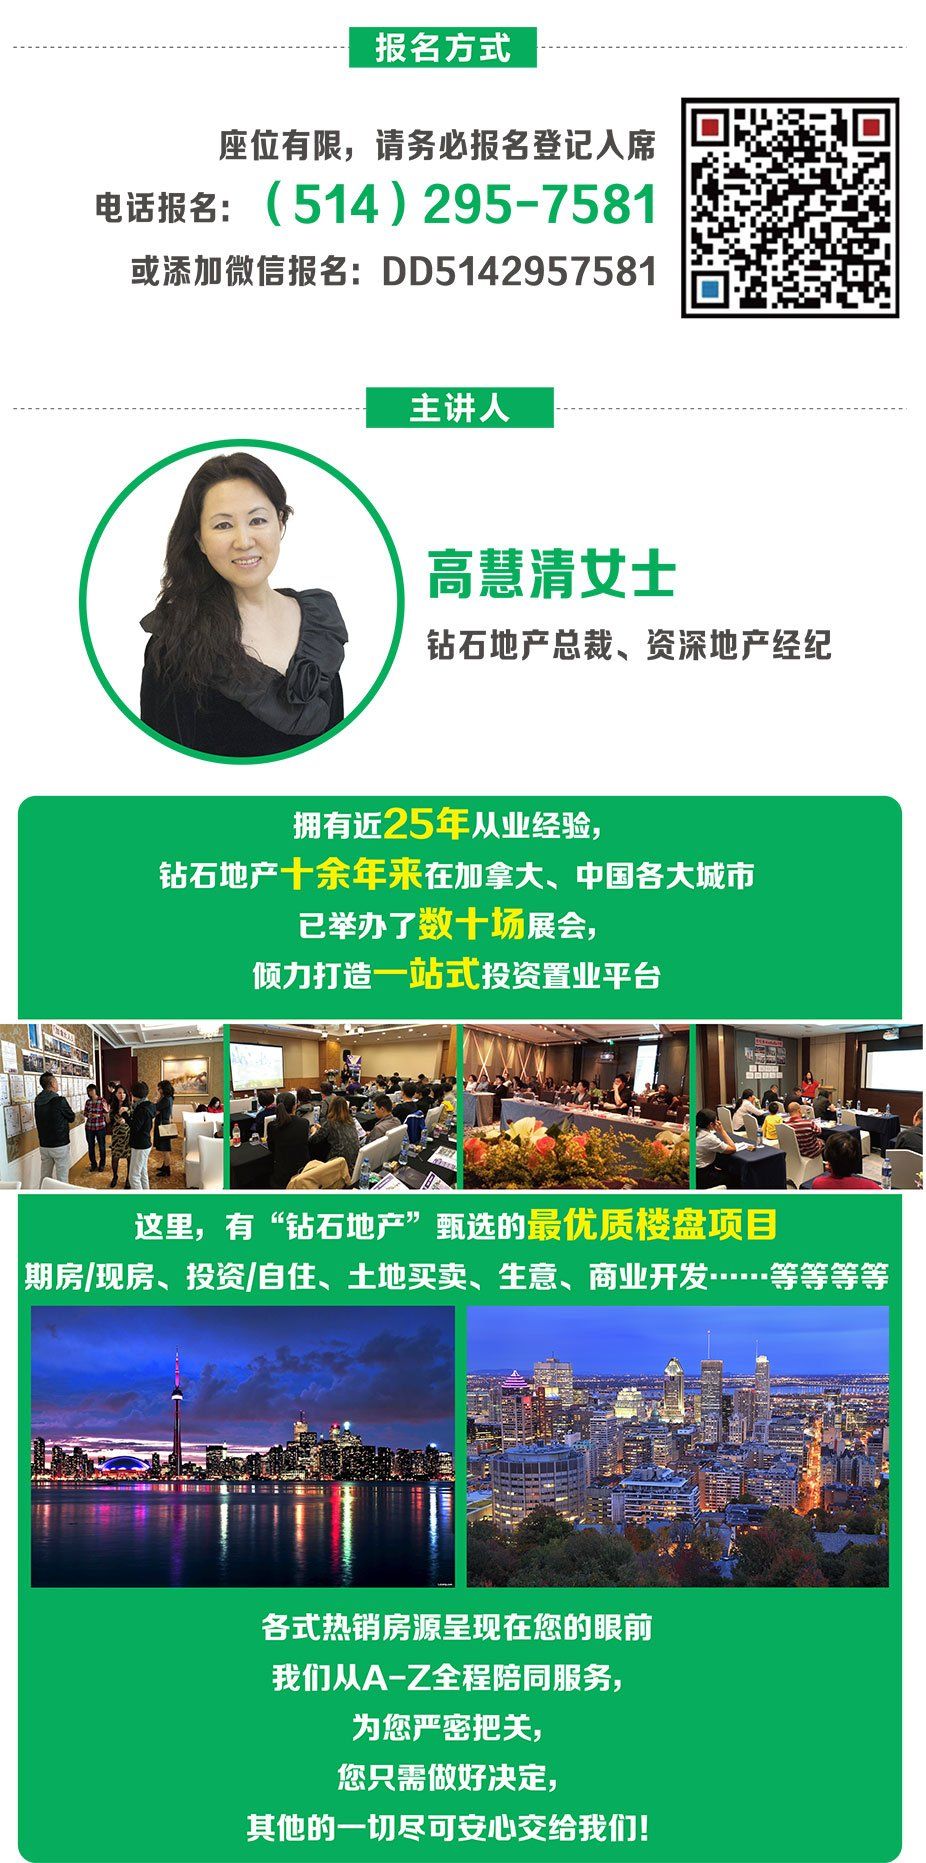 WeChat Image_20180228150153.jpg